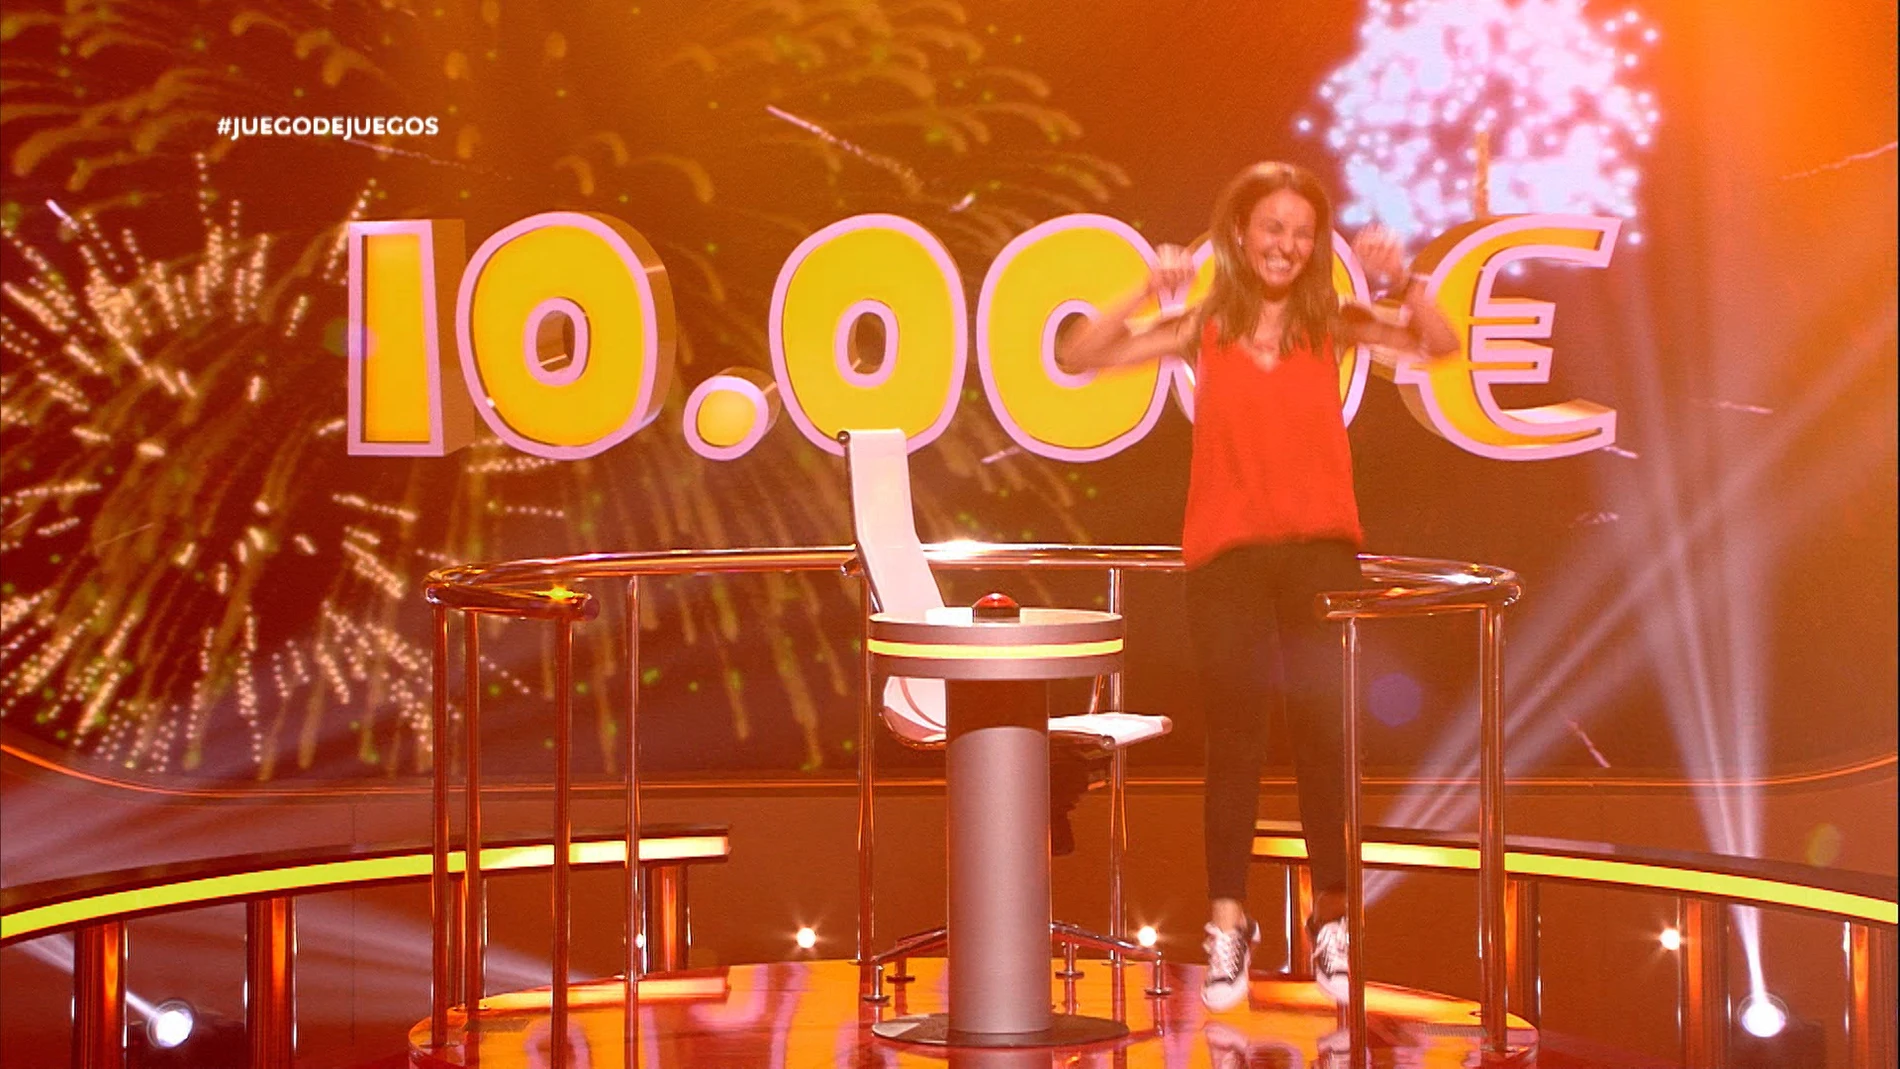 Laura gana 10.000 euros en ‘Juego de juegos’